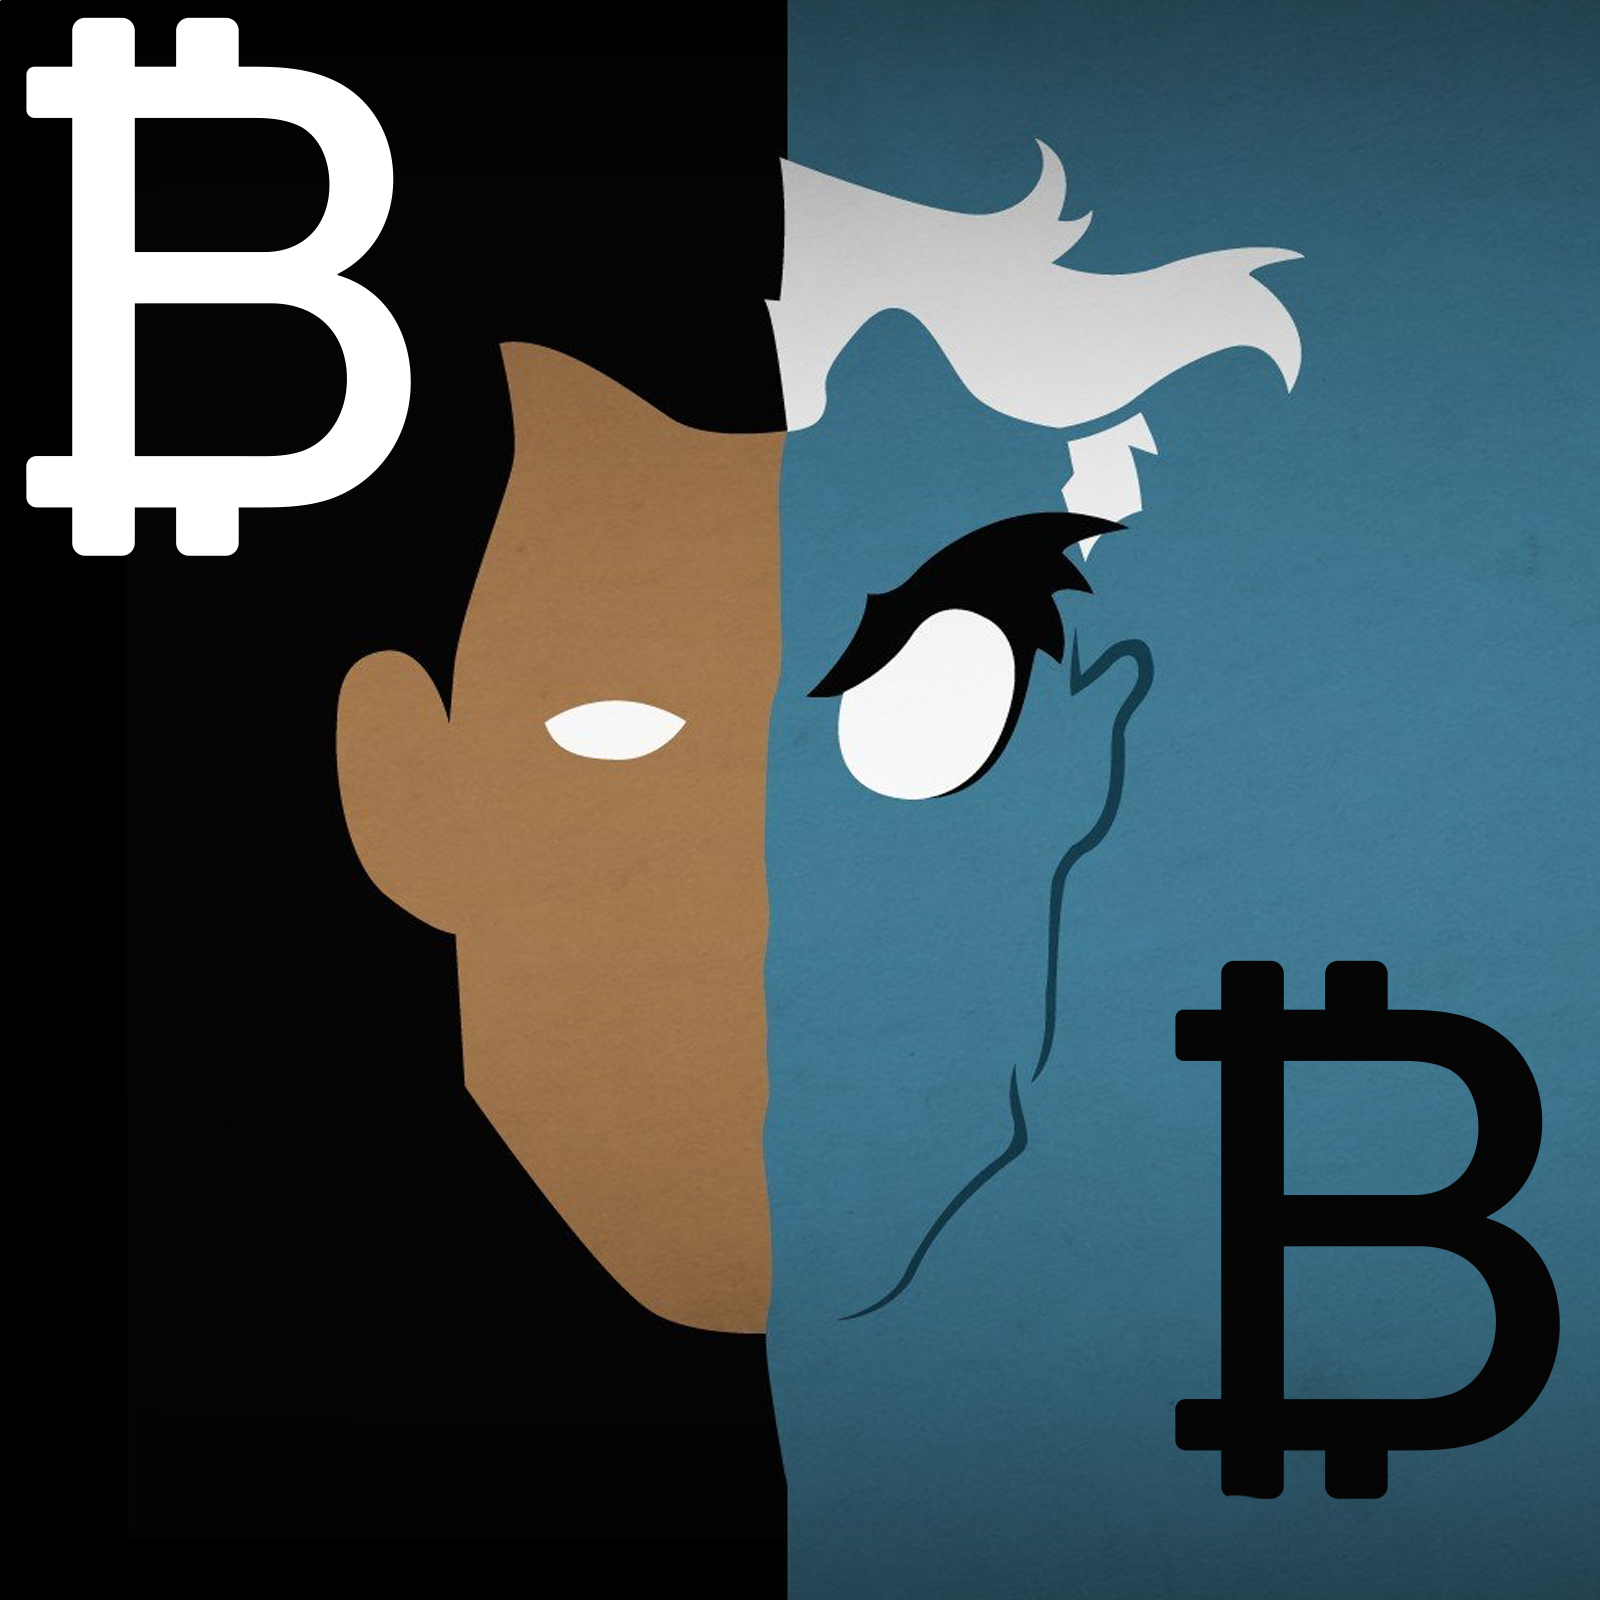 Study Provides an Interesting Look at Changing Bitcoin Narratives